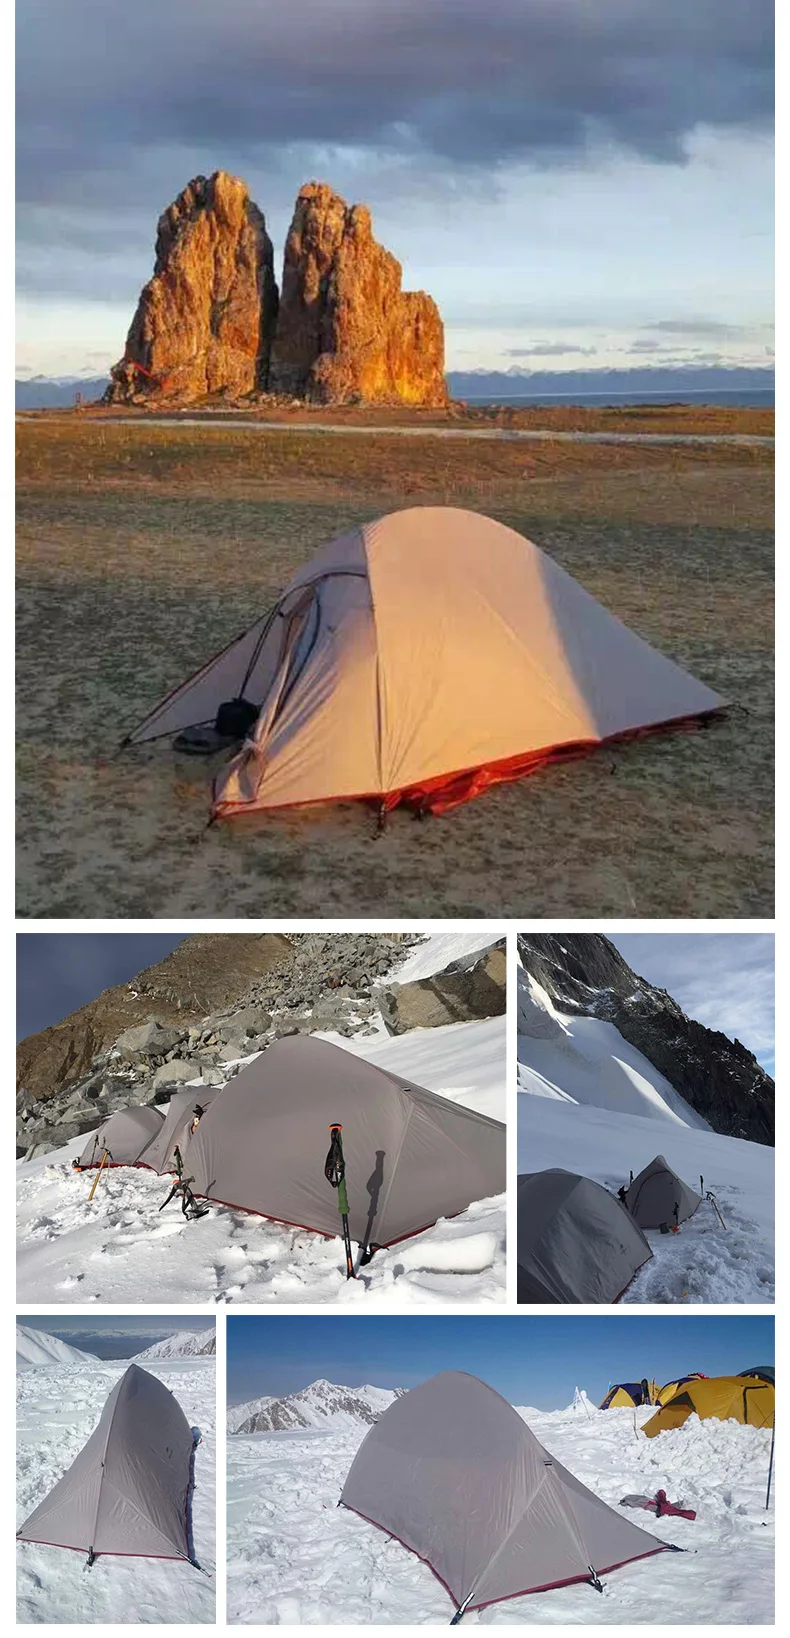 Naturehike Cloud Up обновленная версия палатки для кемпинга самостоятельные стоячие палатки сверхлегкие уличные палатки 1 2 3 человек палатки для кемпинга